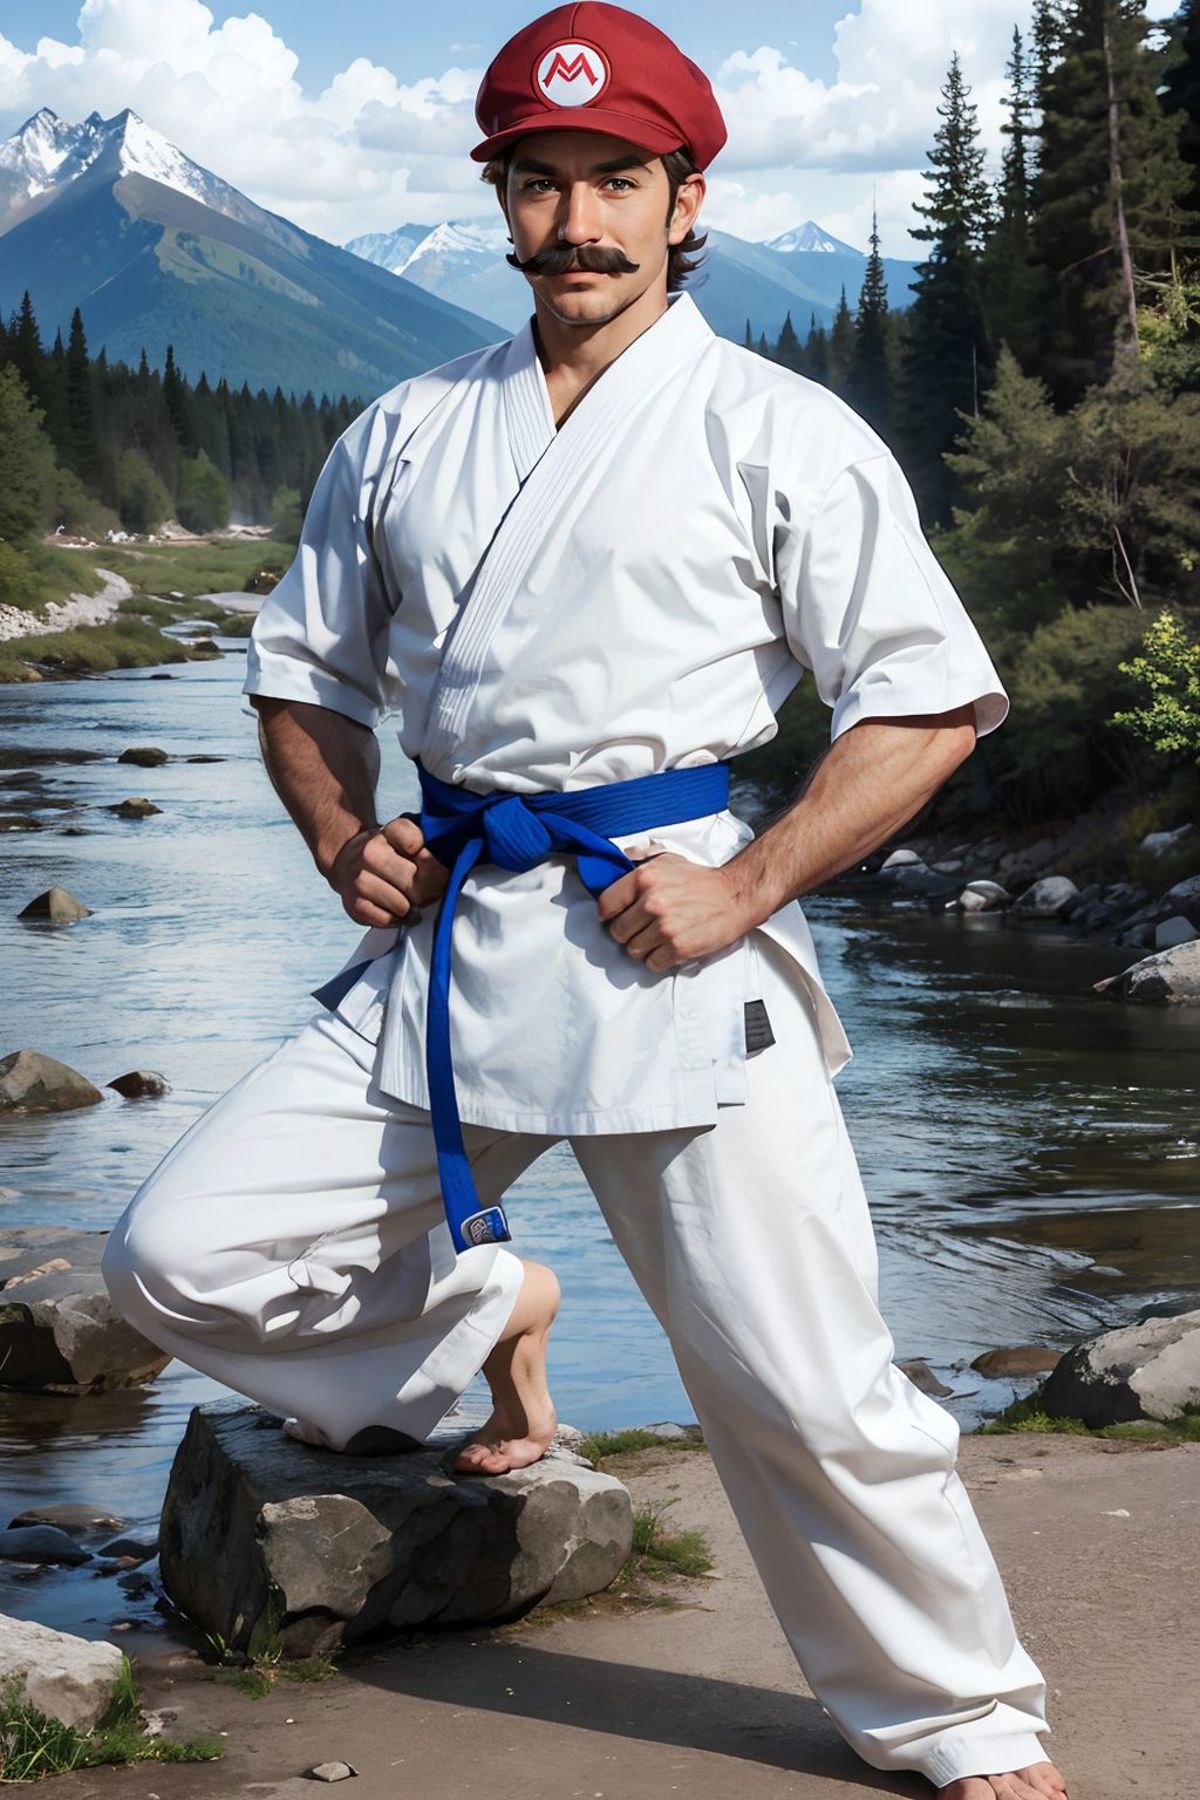 karate uniform image by wikkitikki